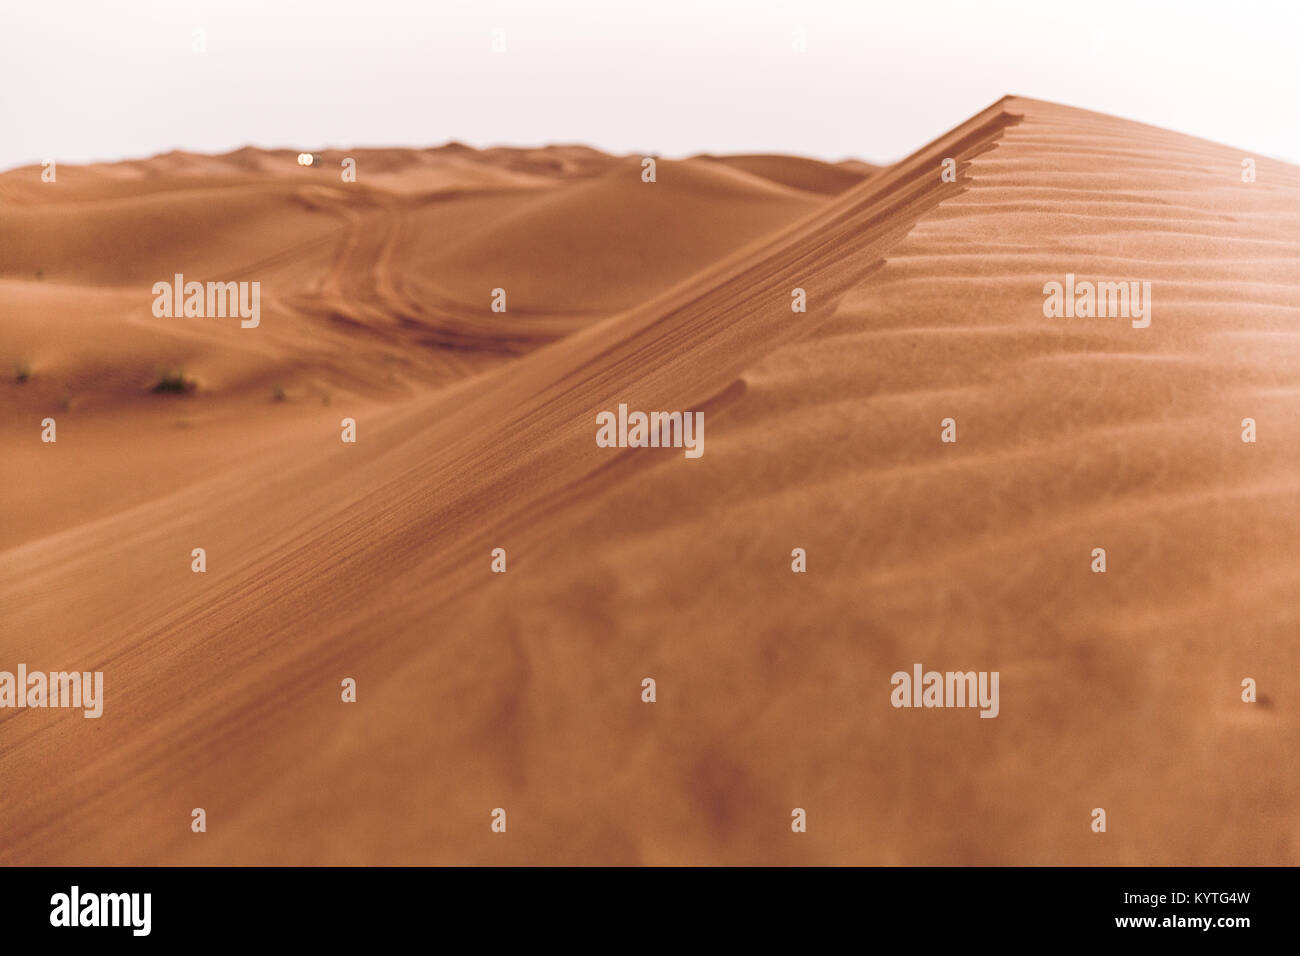 Dune Bashing in Dubai Wüste auf Oman Road. Natürliche Texturen, abstraktes Muster, Wind. Planet Erde, Mutter Natur. Feiner Sand. Stockfoto